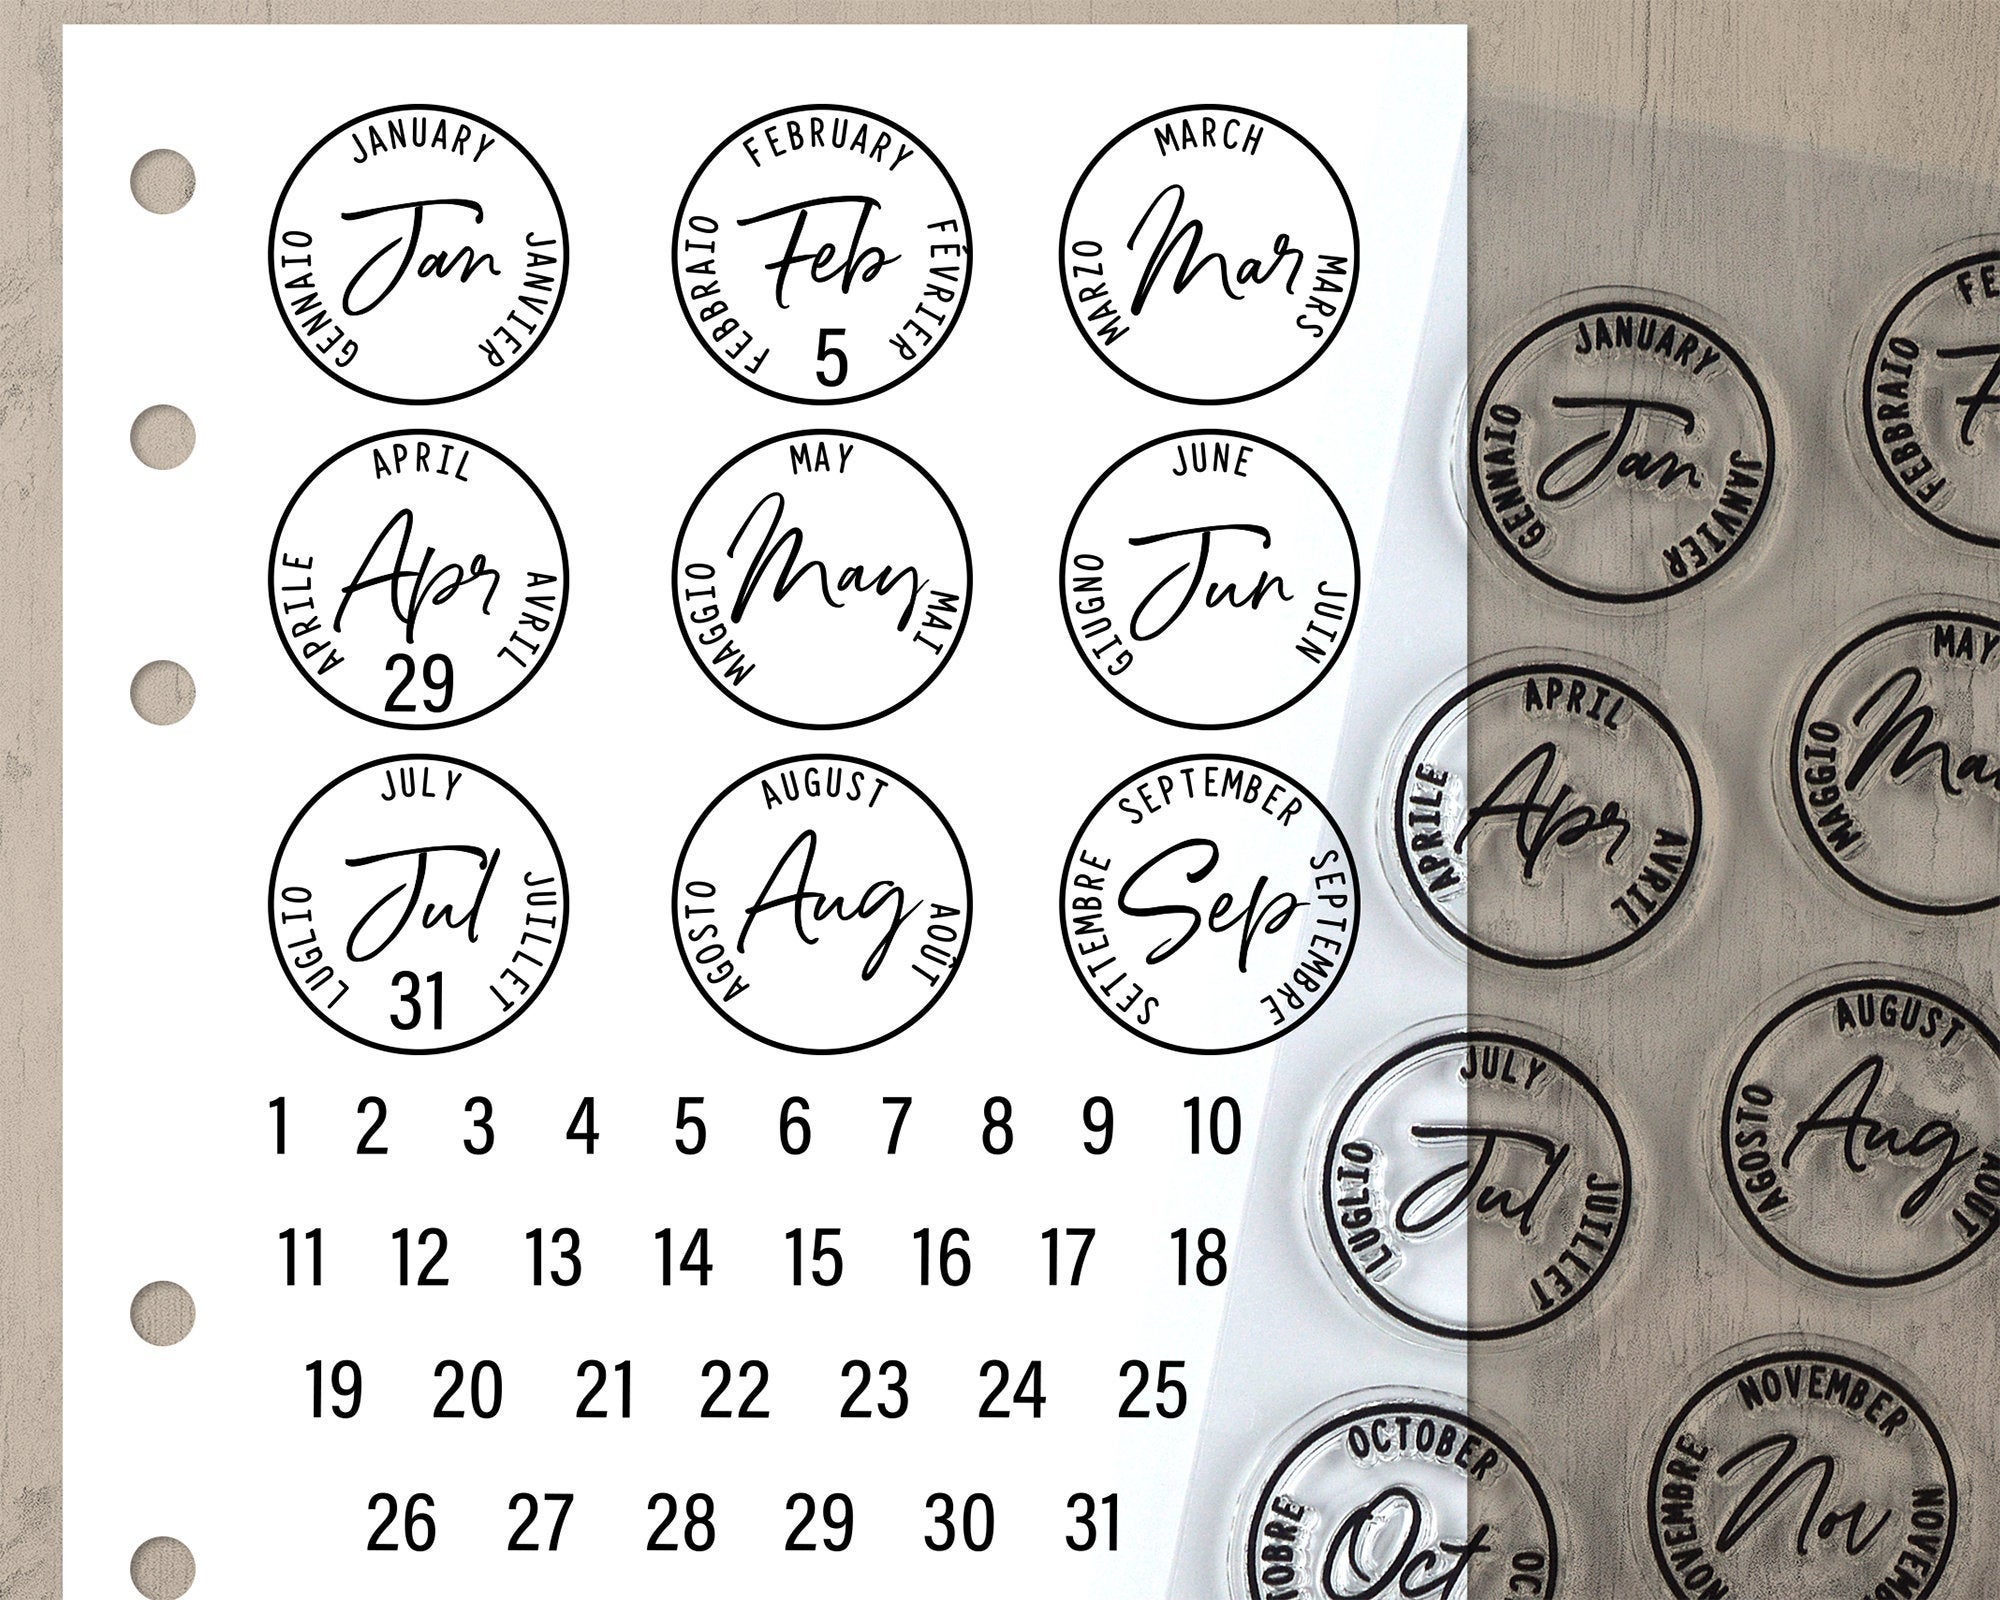 Circle Pattern Stamp| Circles Mini Stamp | Kids stamp | Craft Stamp | Craft  supplies |Planner Stamps | Mini Stamps | Scrapbooking Stamps